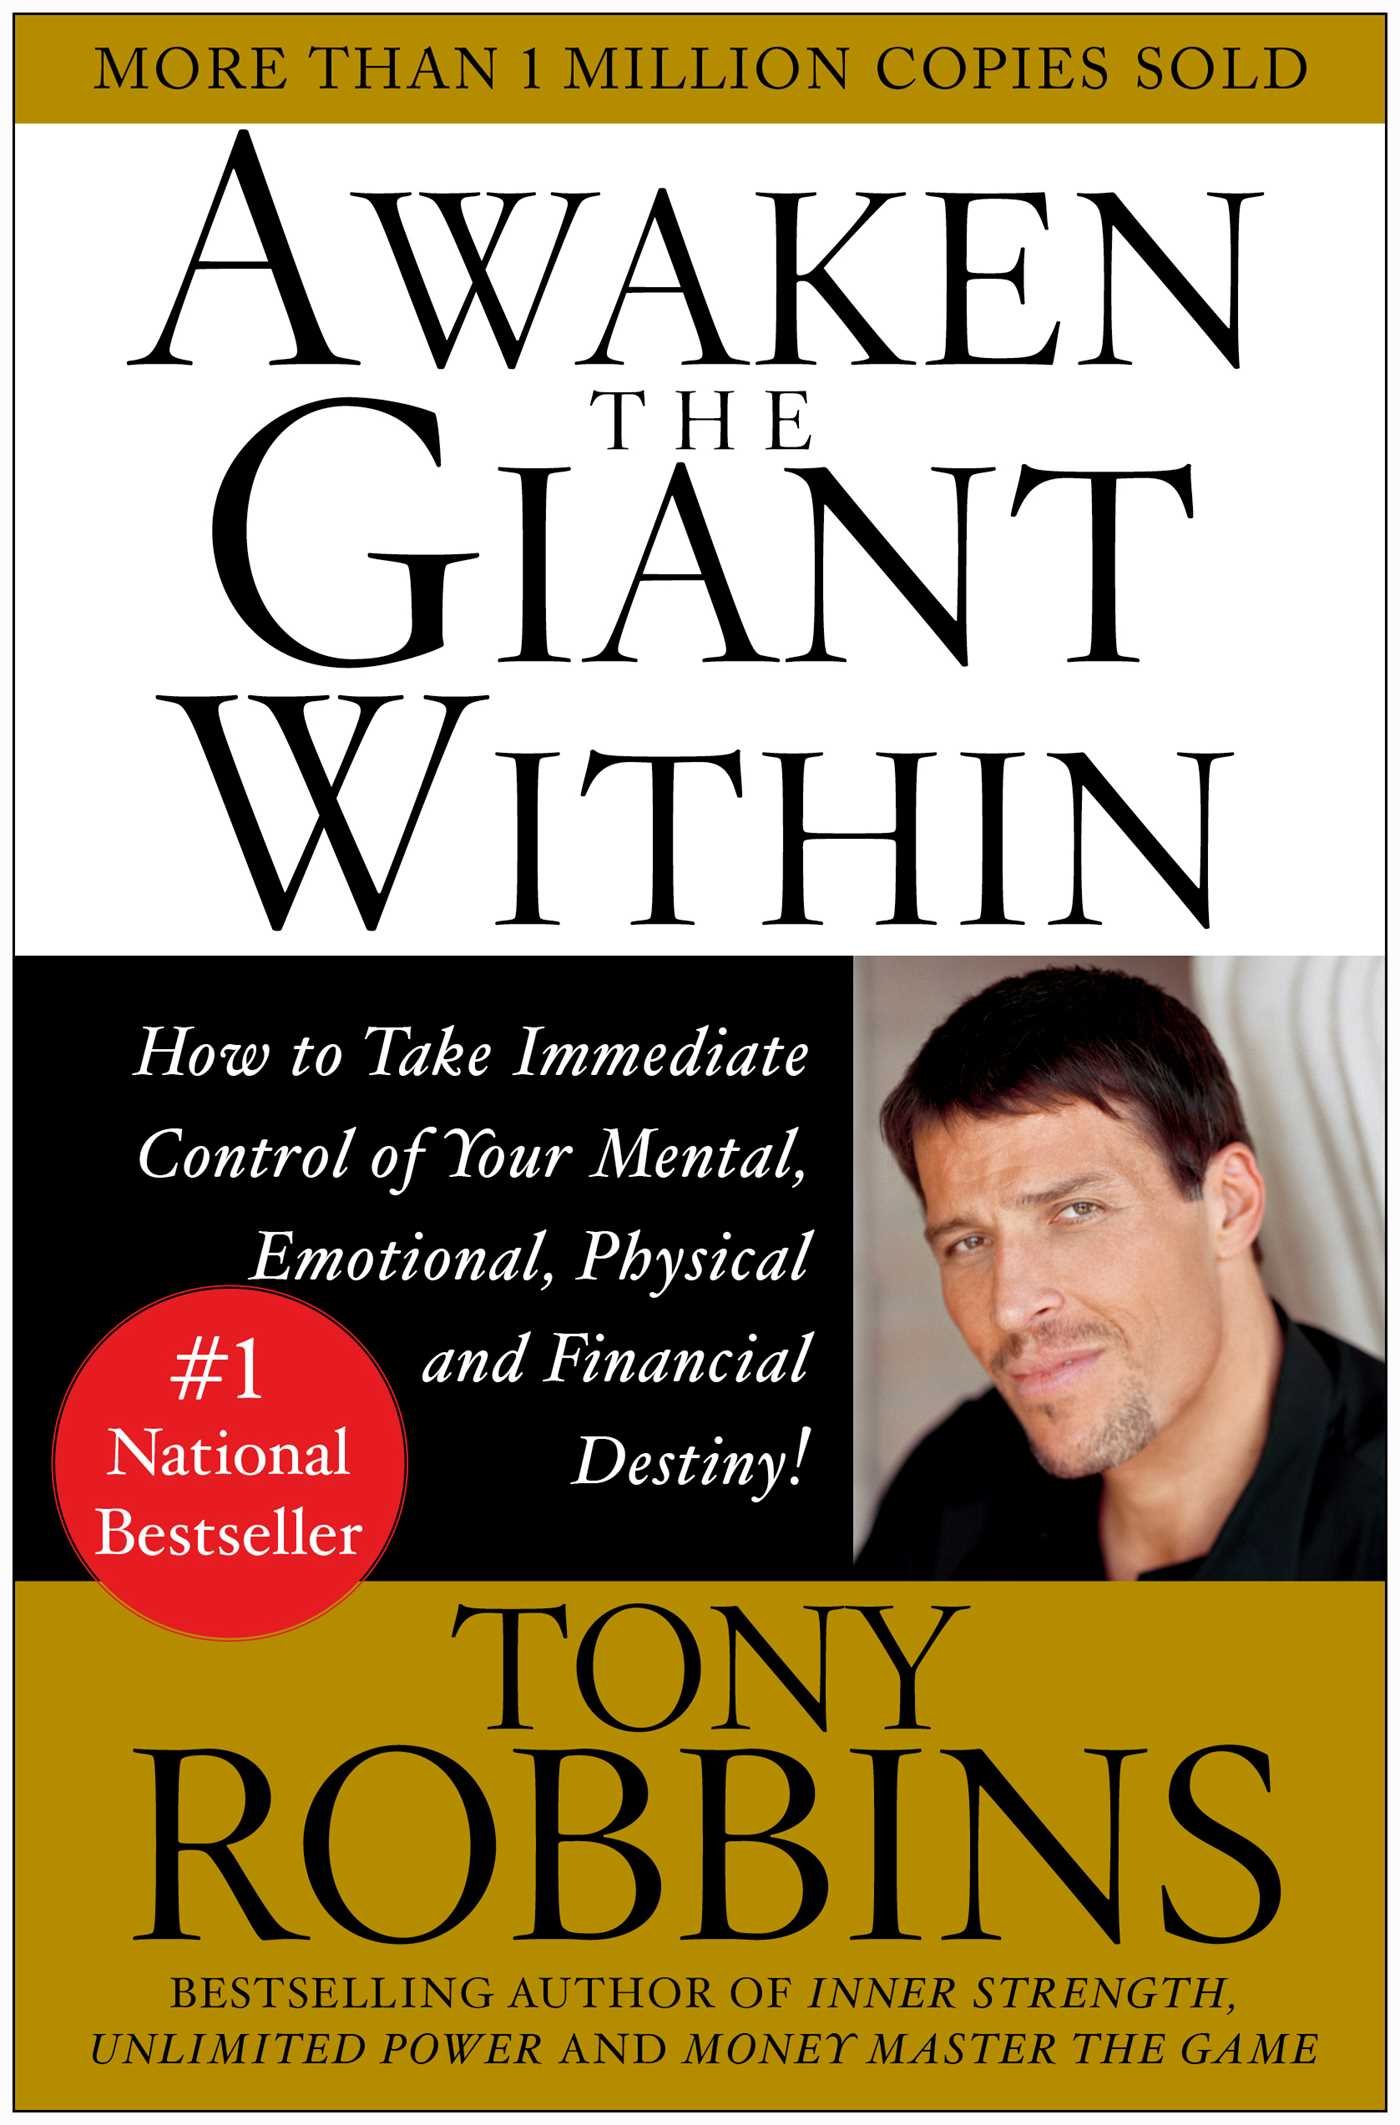 Tony Robbins - Awaken the Giant Within